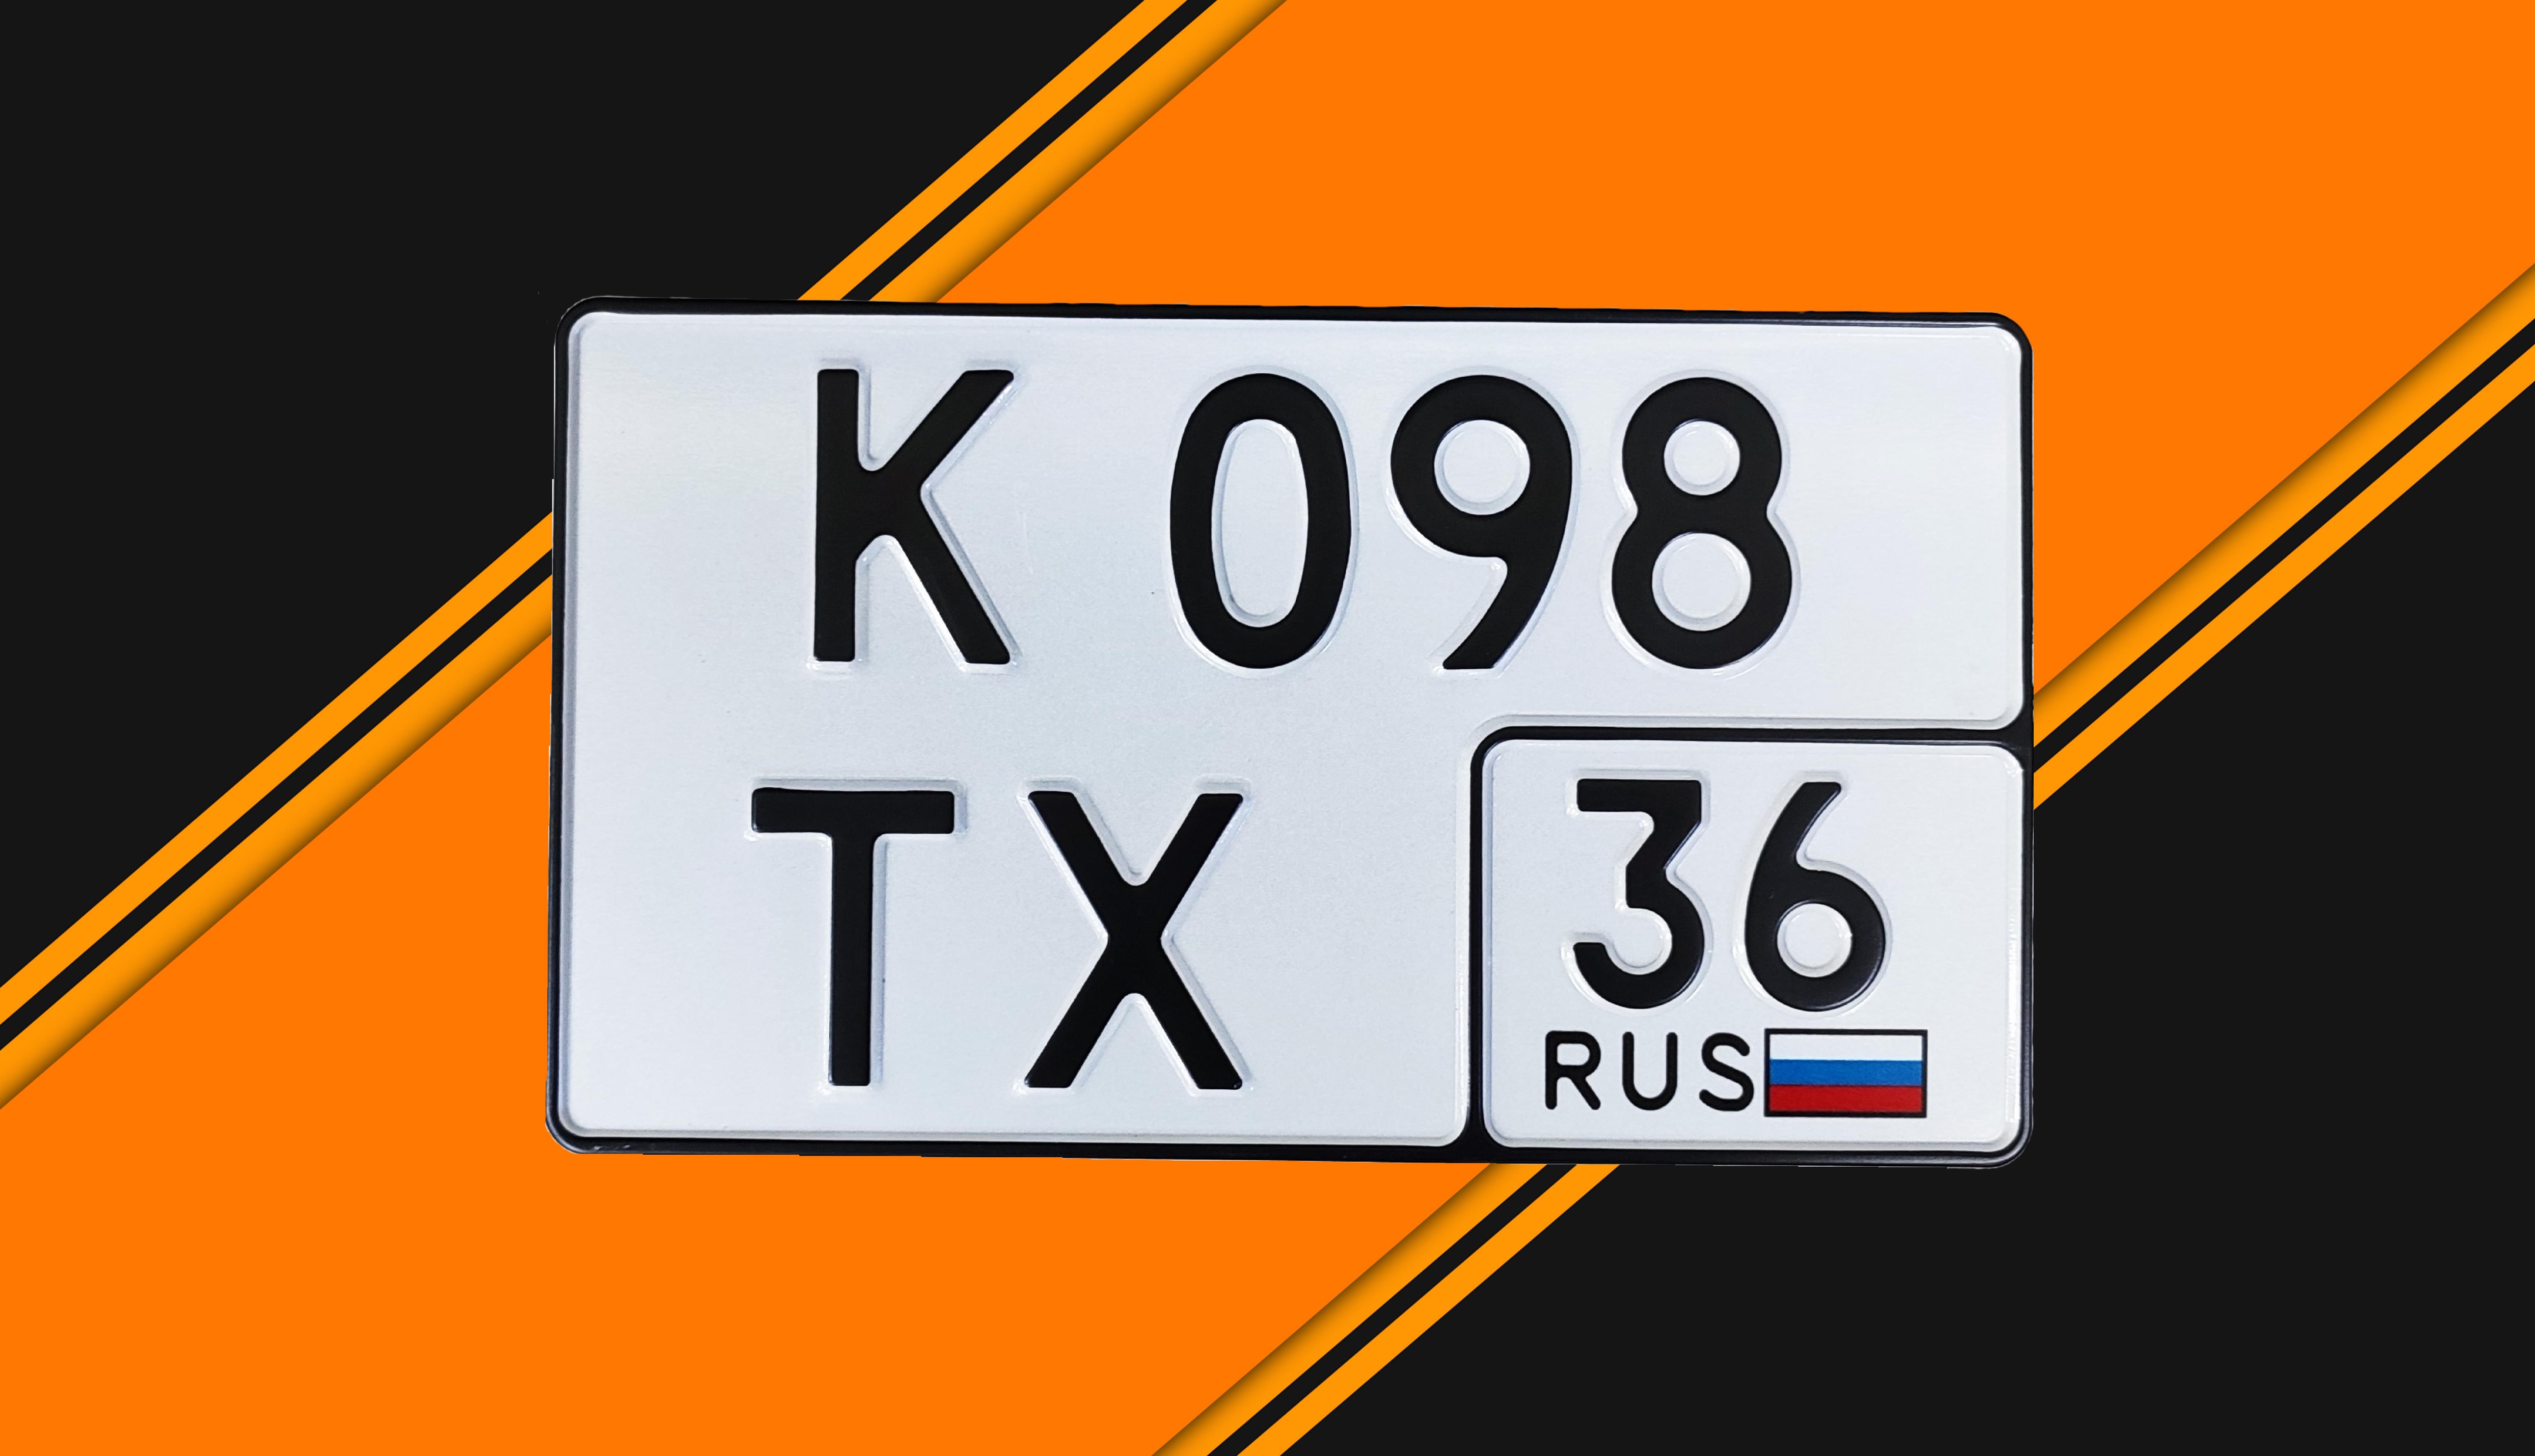 Автомобильный номерной знак K098ТХ 36ru